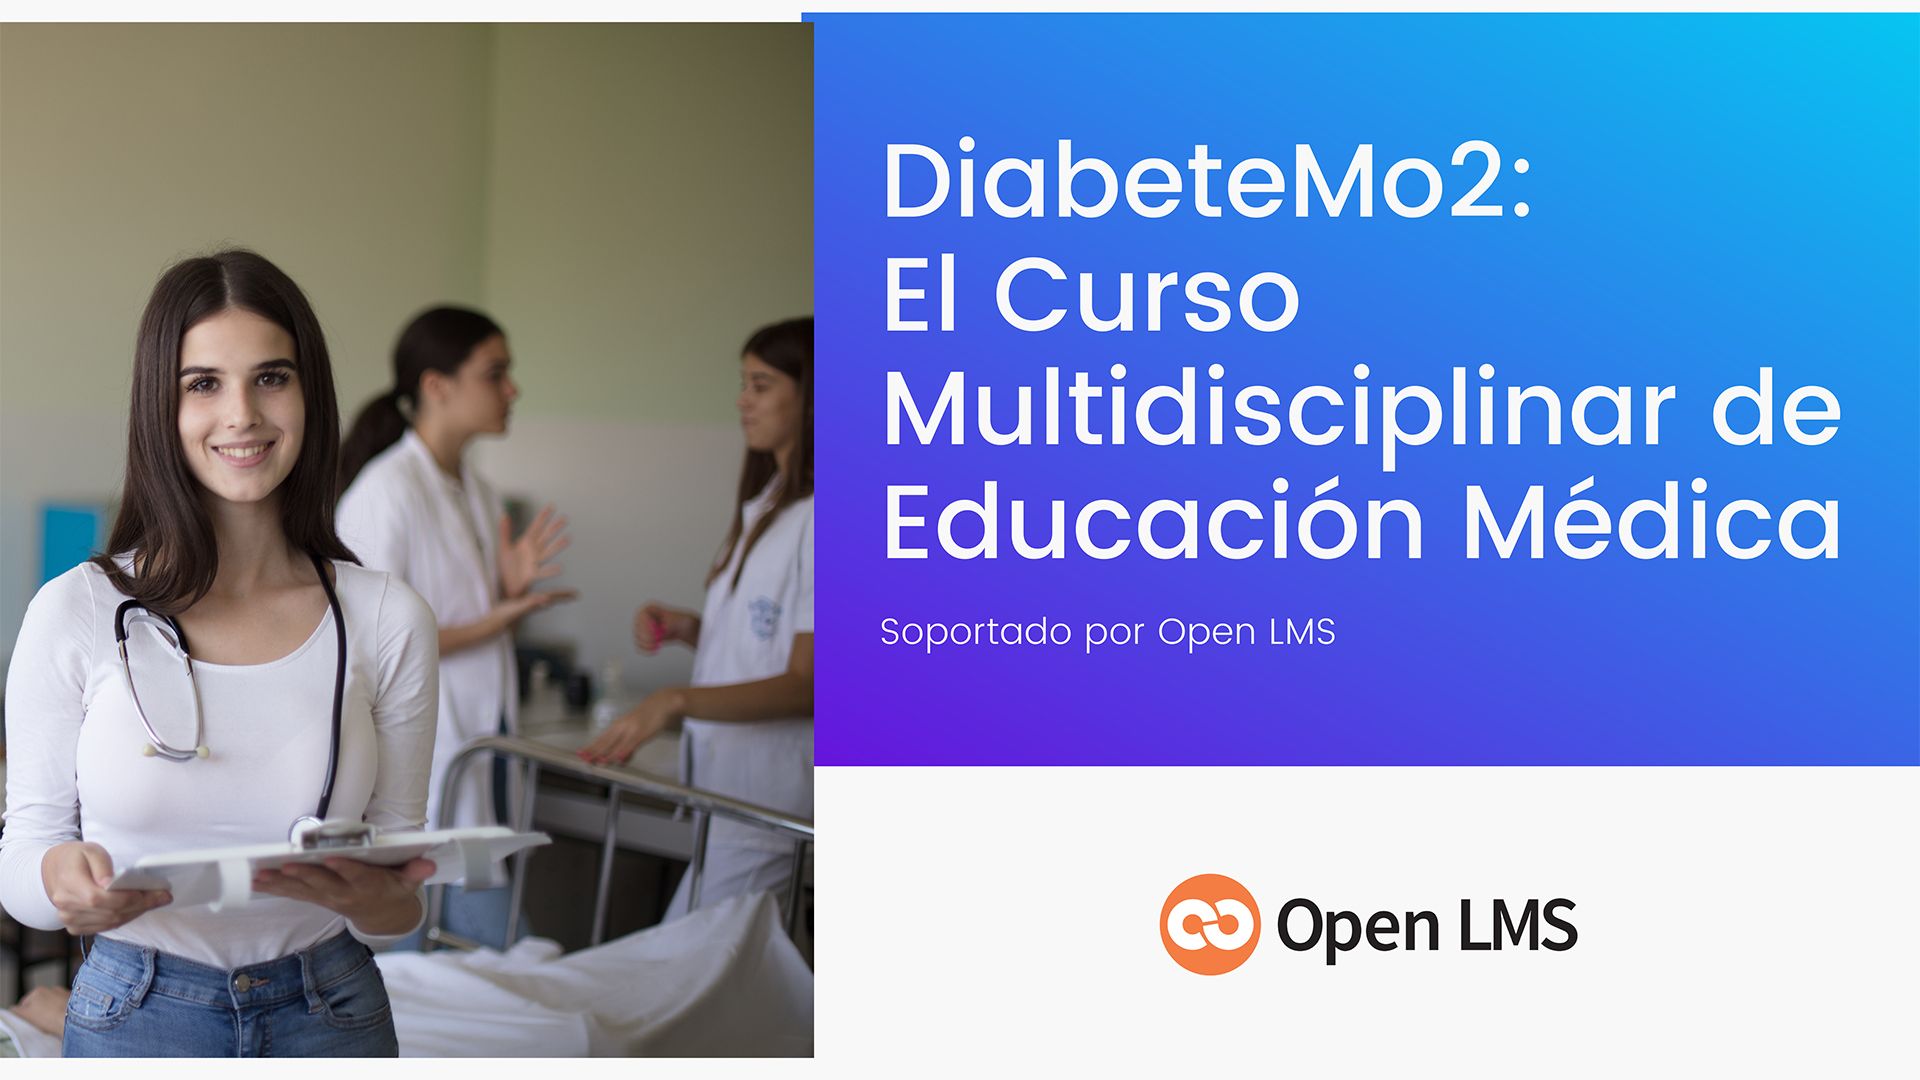 DiabeteMo2: El Curso Multidisciplinar de Educación Médica Soportado por Open LMS